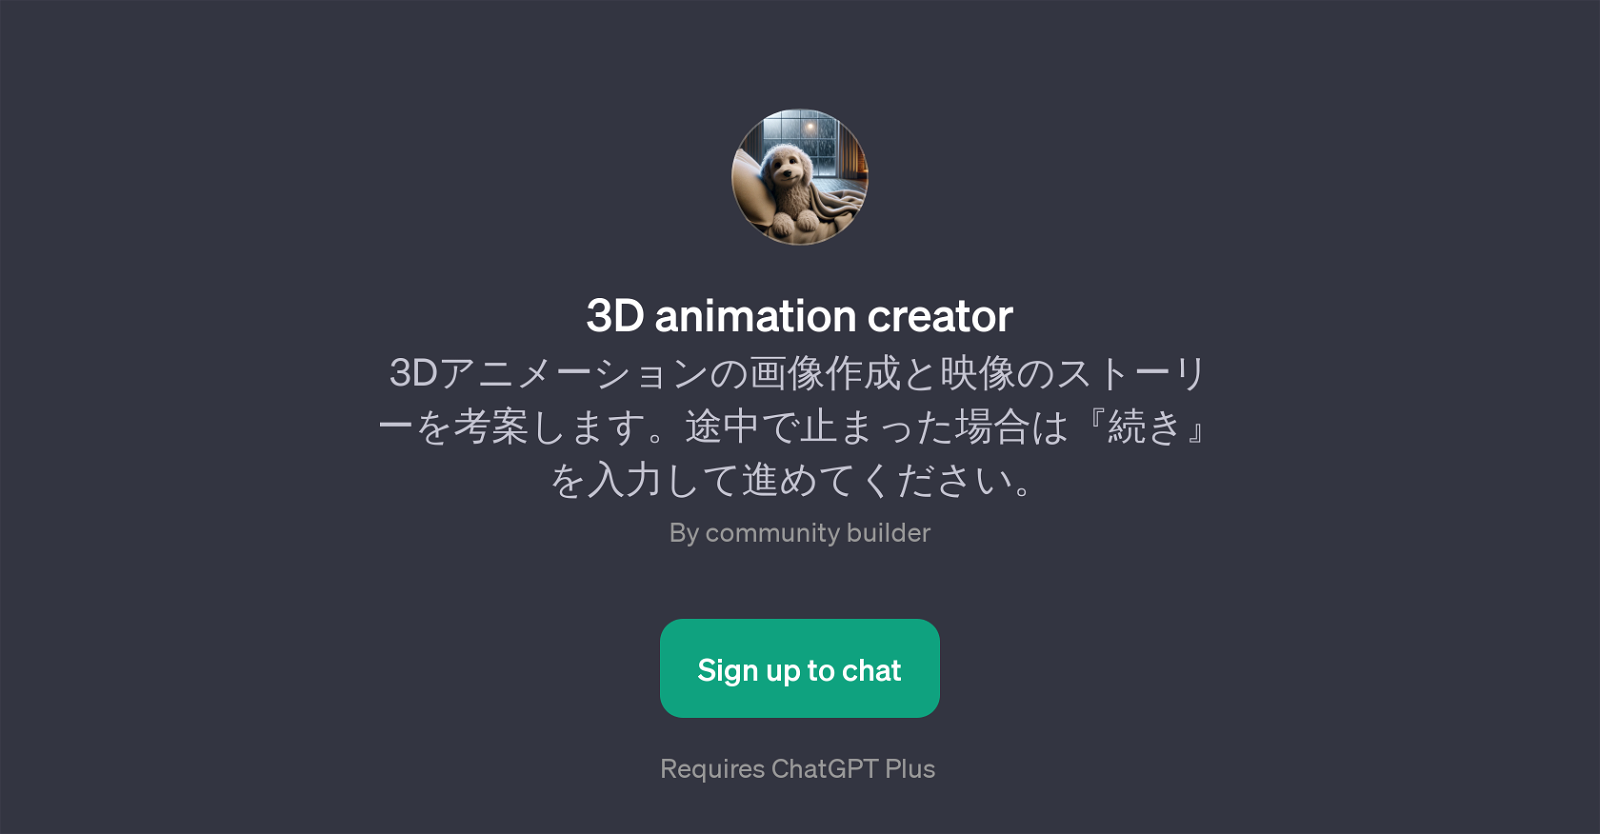 3D Animation Creator website